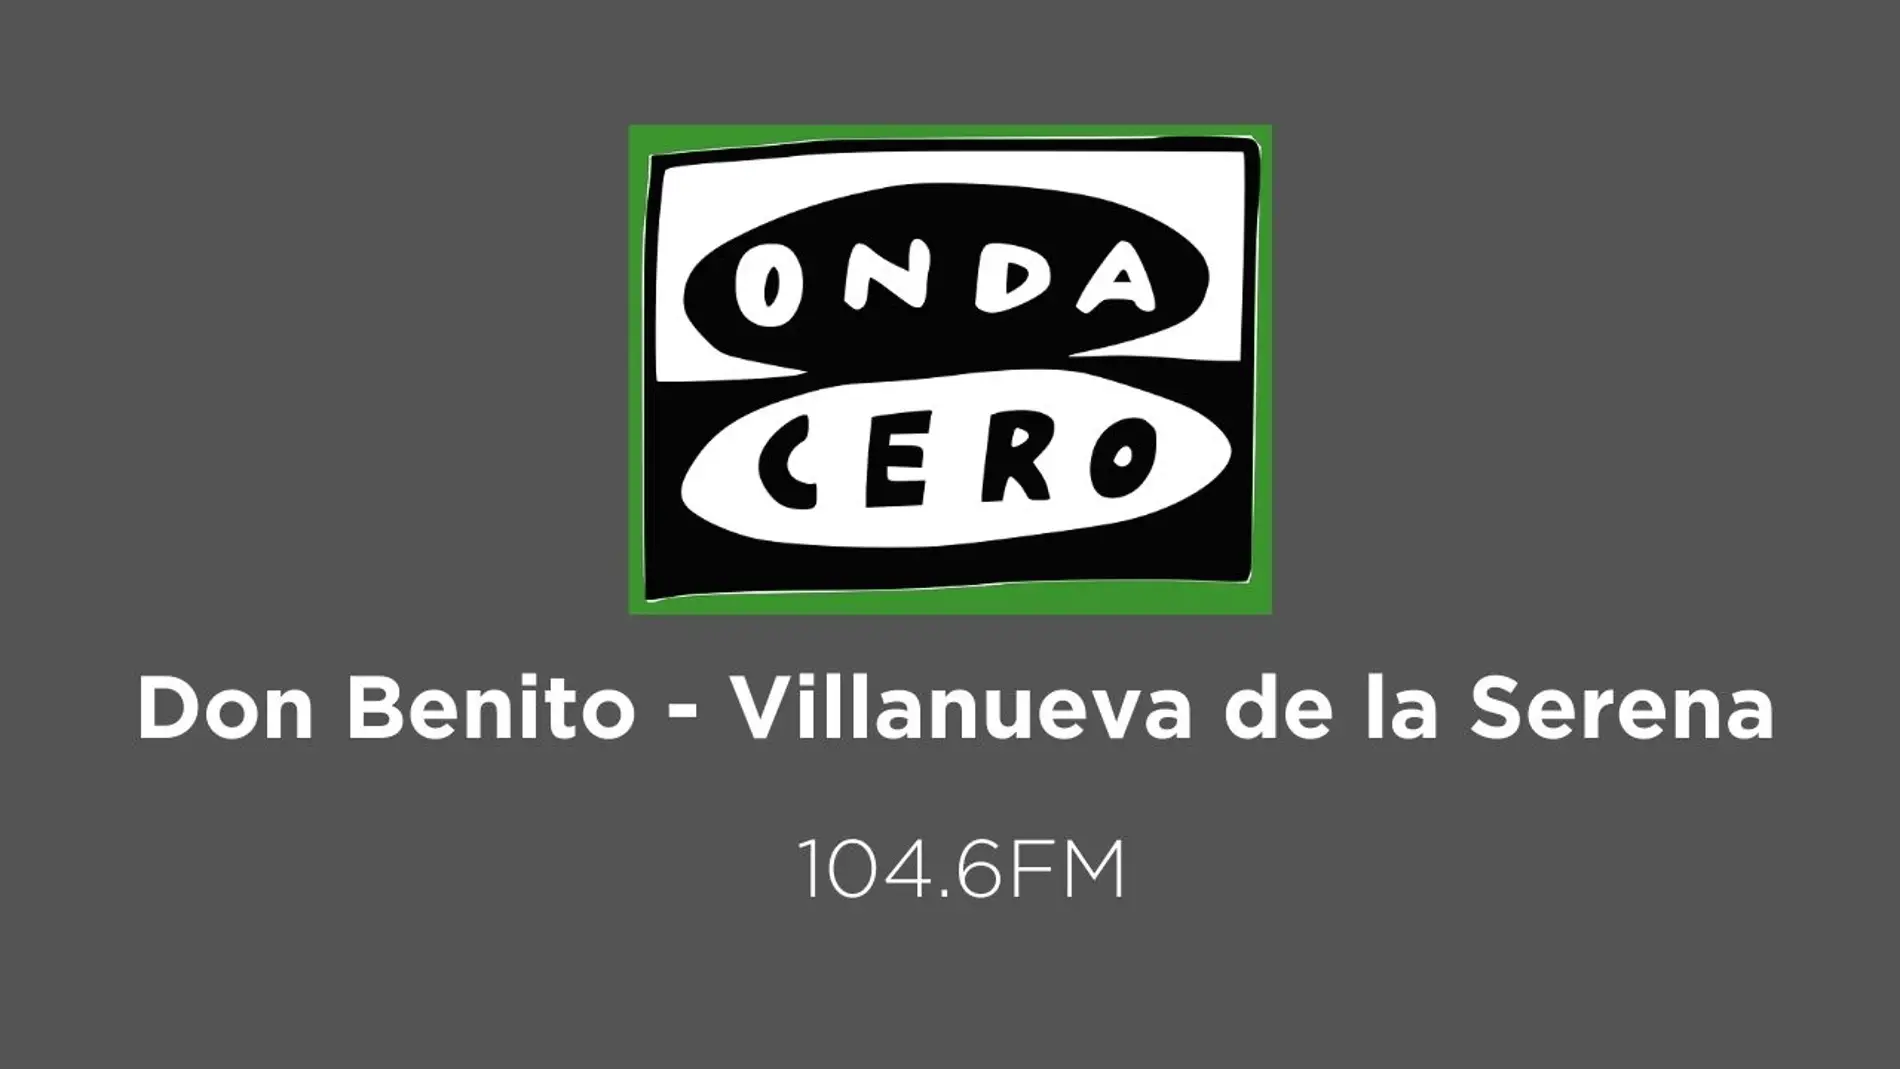 Onda Cero en Don Benito - Villanueva de la Serena en el 104.6 FM